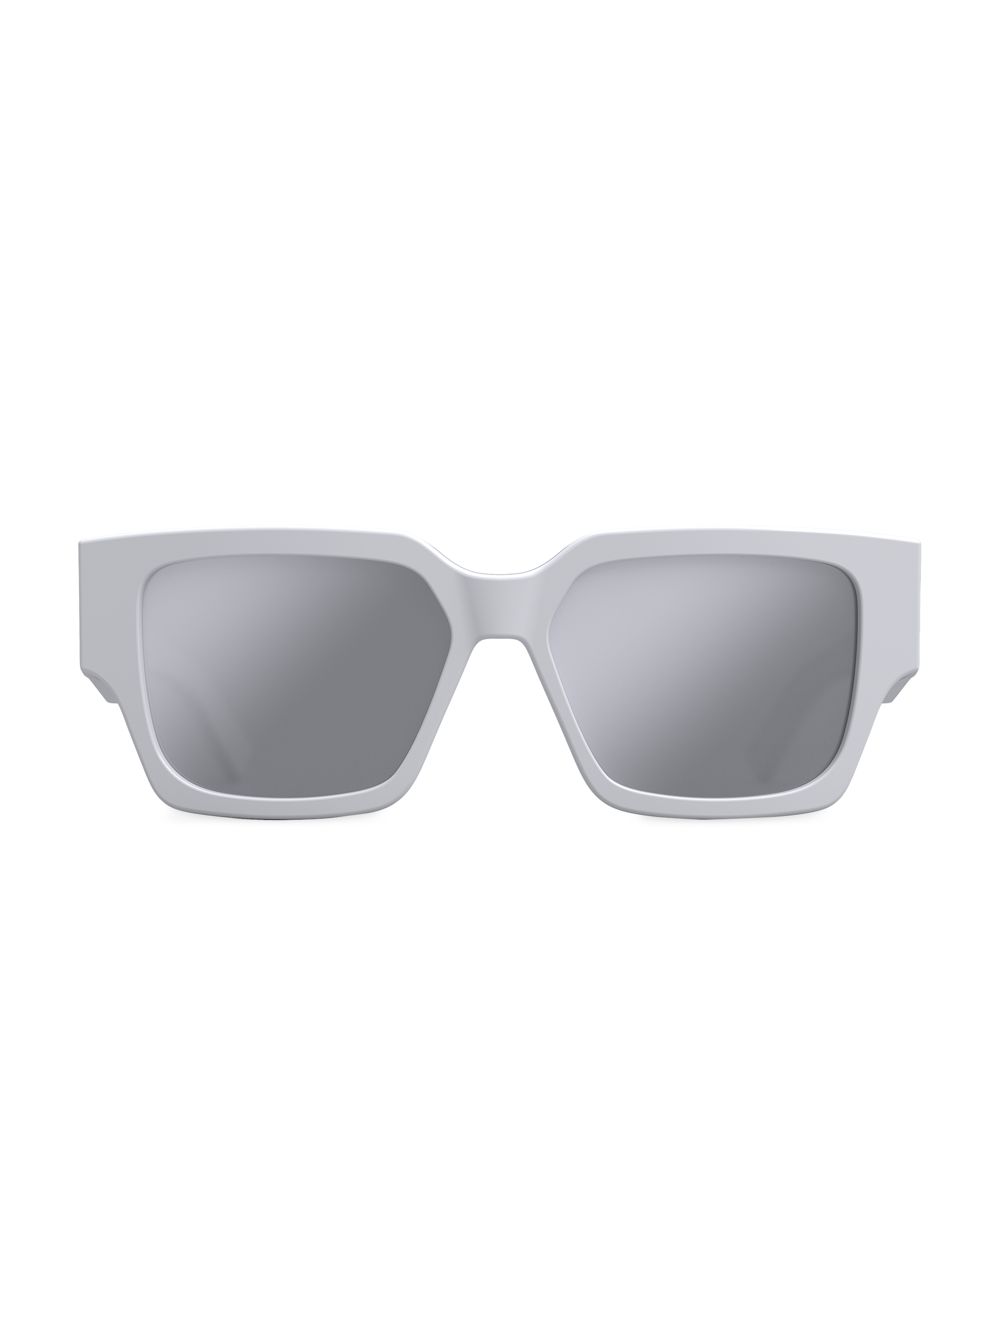 Квадратные солнцезащитные очки CD SU 55 мм Dior, белый